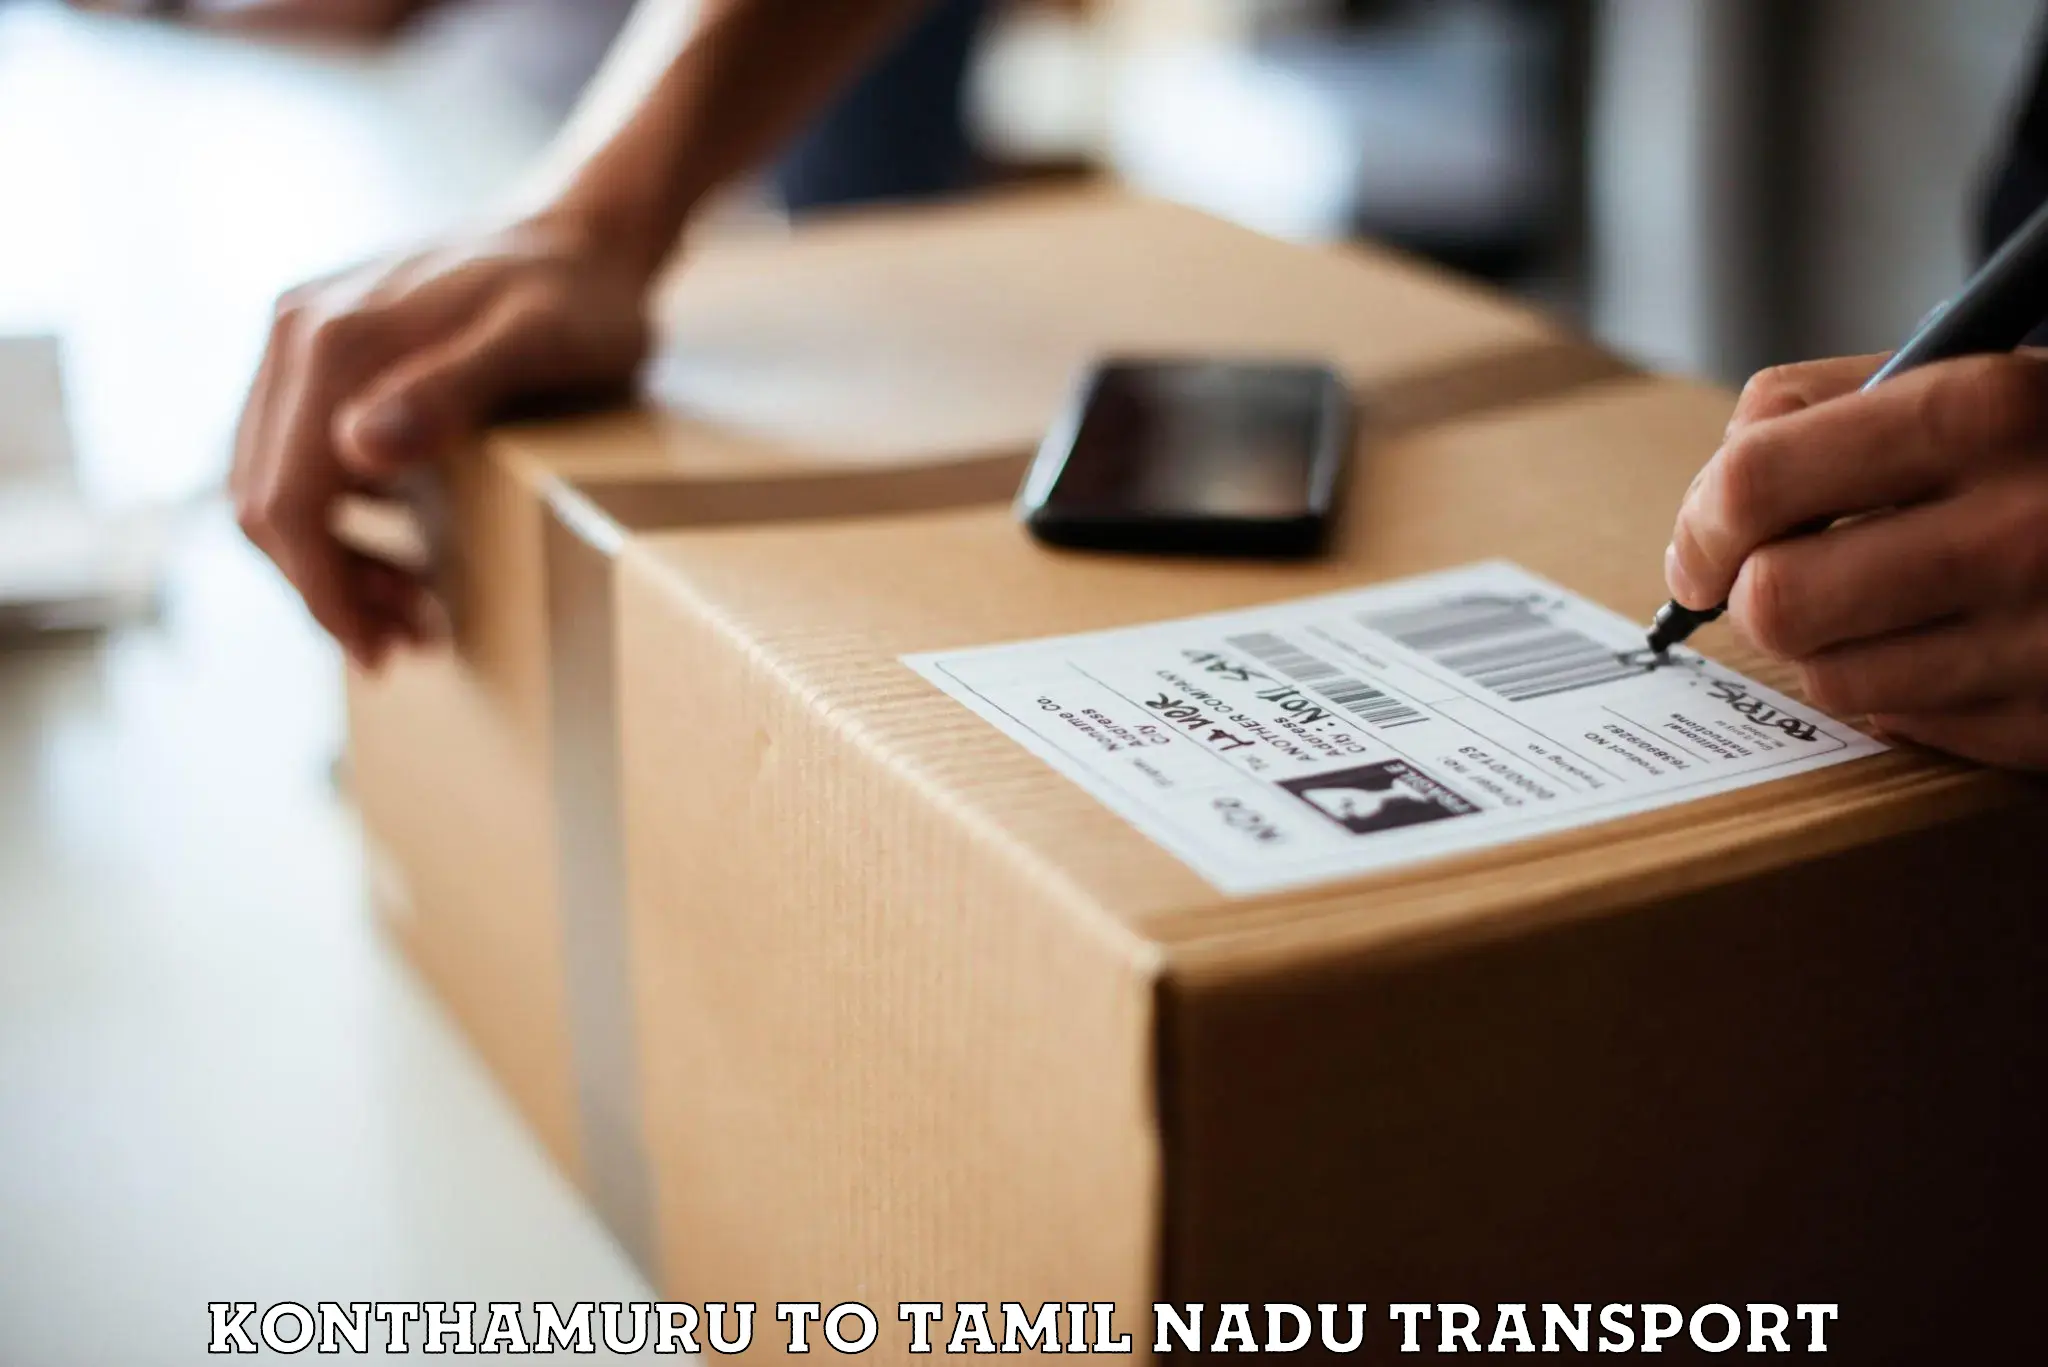 Two wheeler parcel service Konthamuru to Tiruppur